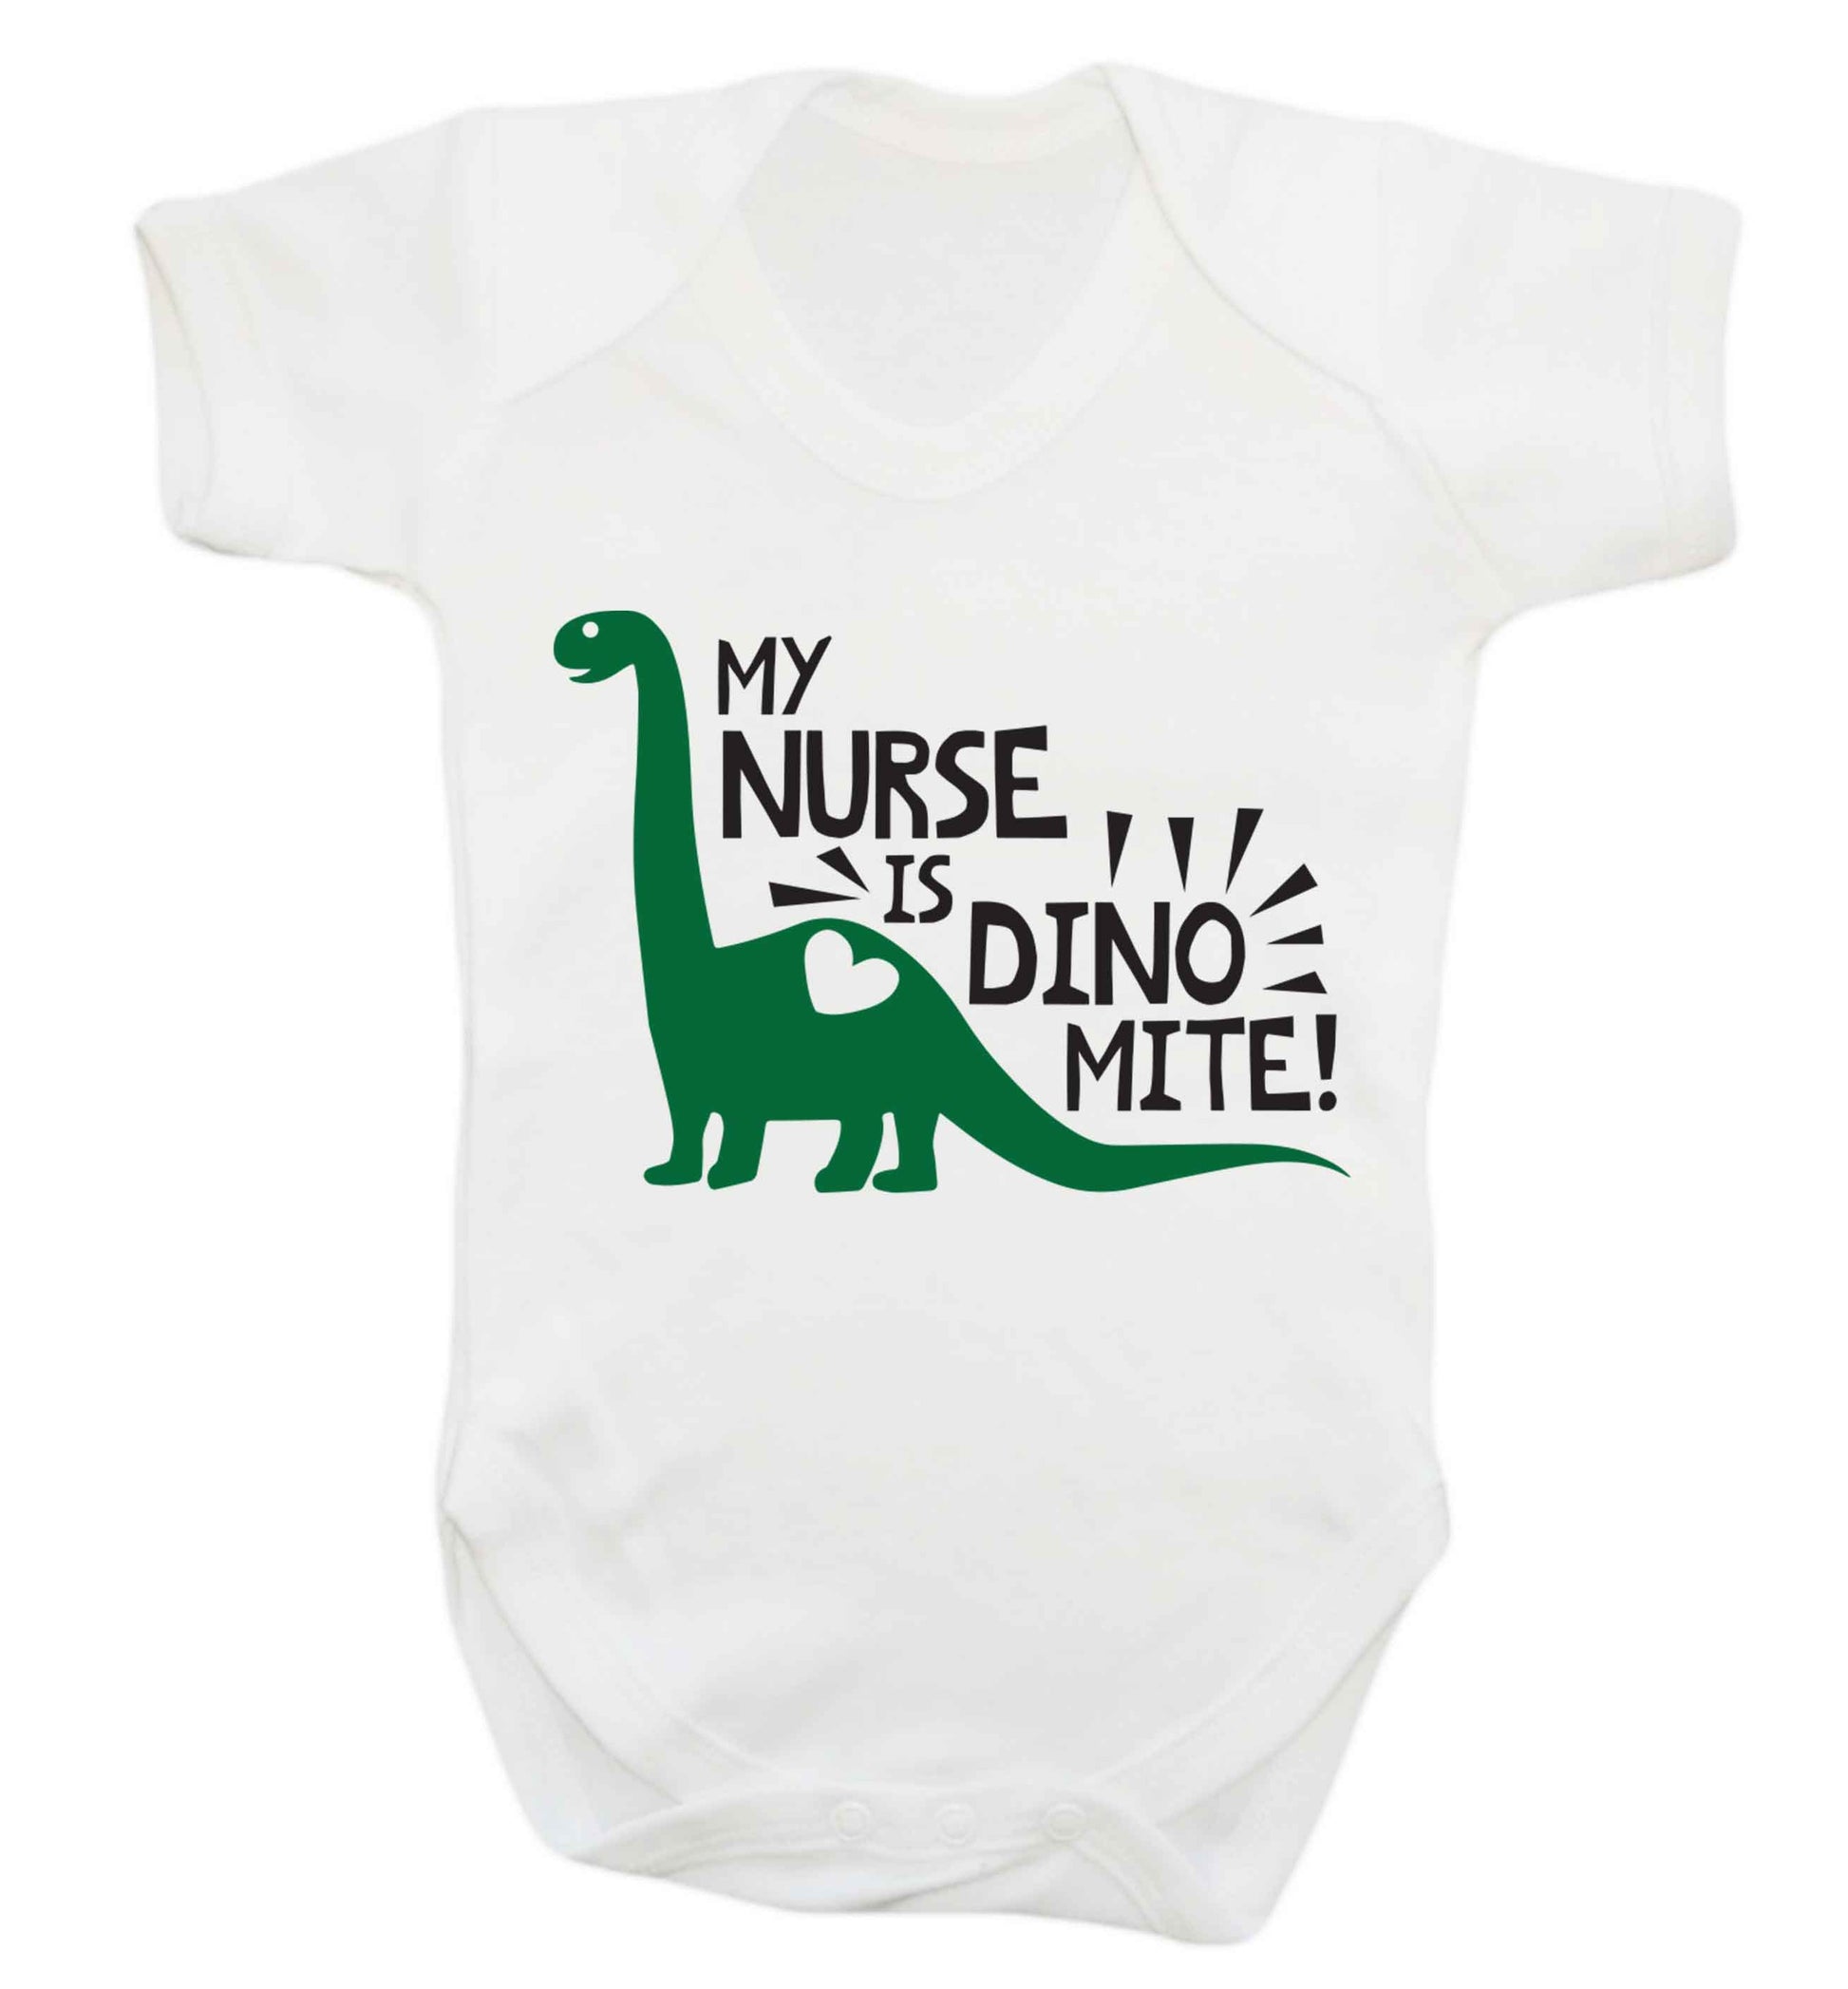 My nurse is dinomite! Baby Vest white 18-24 months